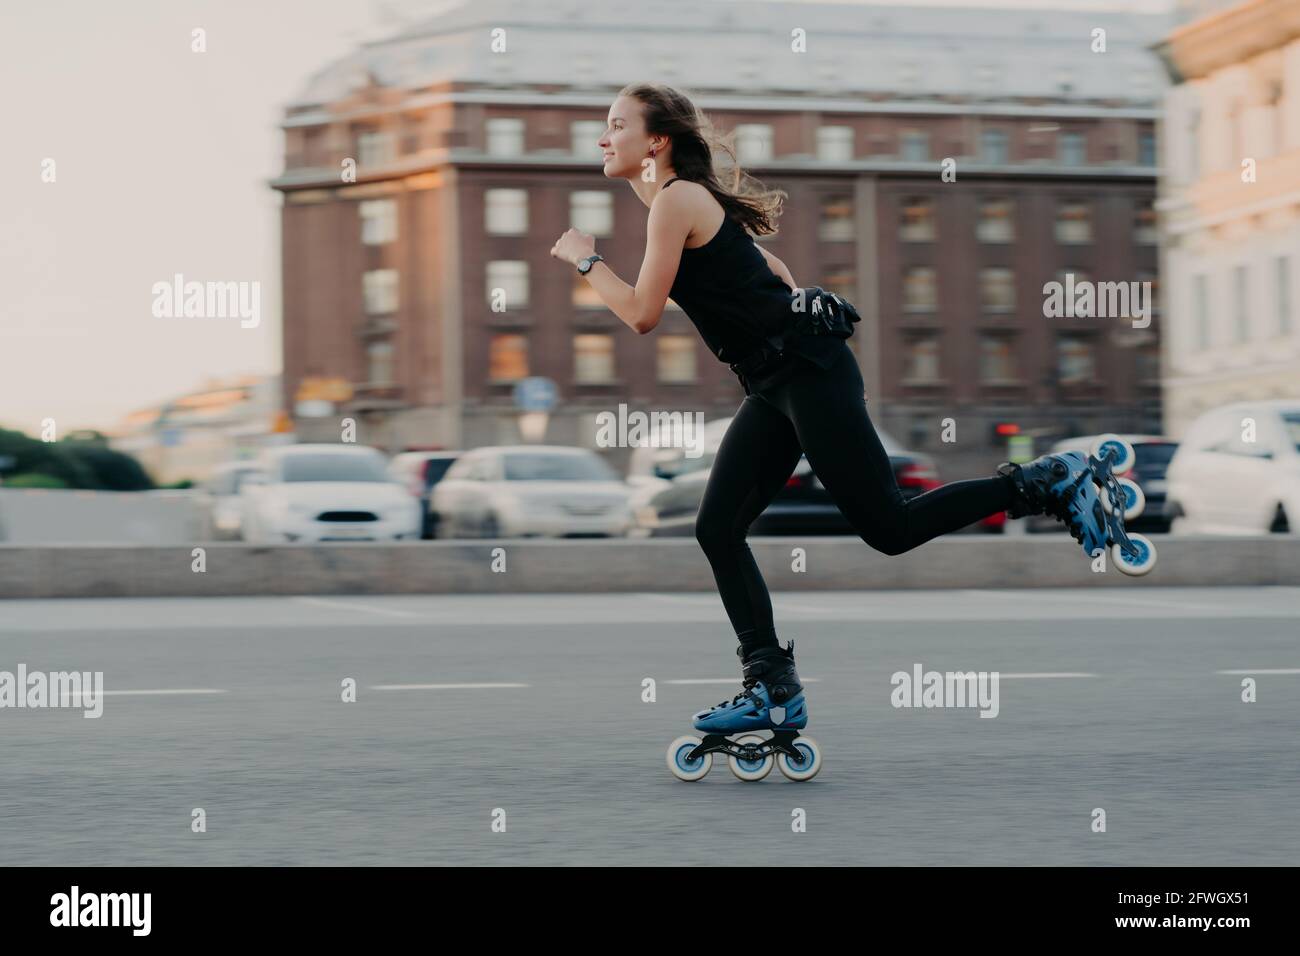 Frau reitet auf Rollen bewegt sich sehr schnell gekleidet in aktiv Wear genießt Rollerblading in Action-Posen in Urban fotografiert Setzen Sie sich ein Stockfoto